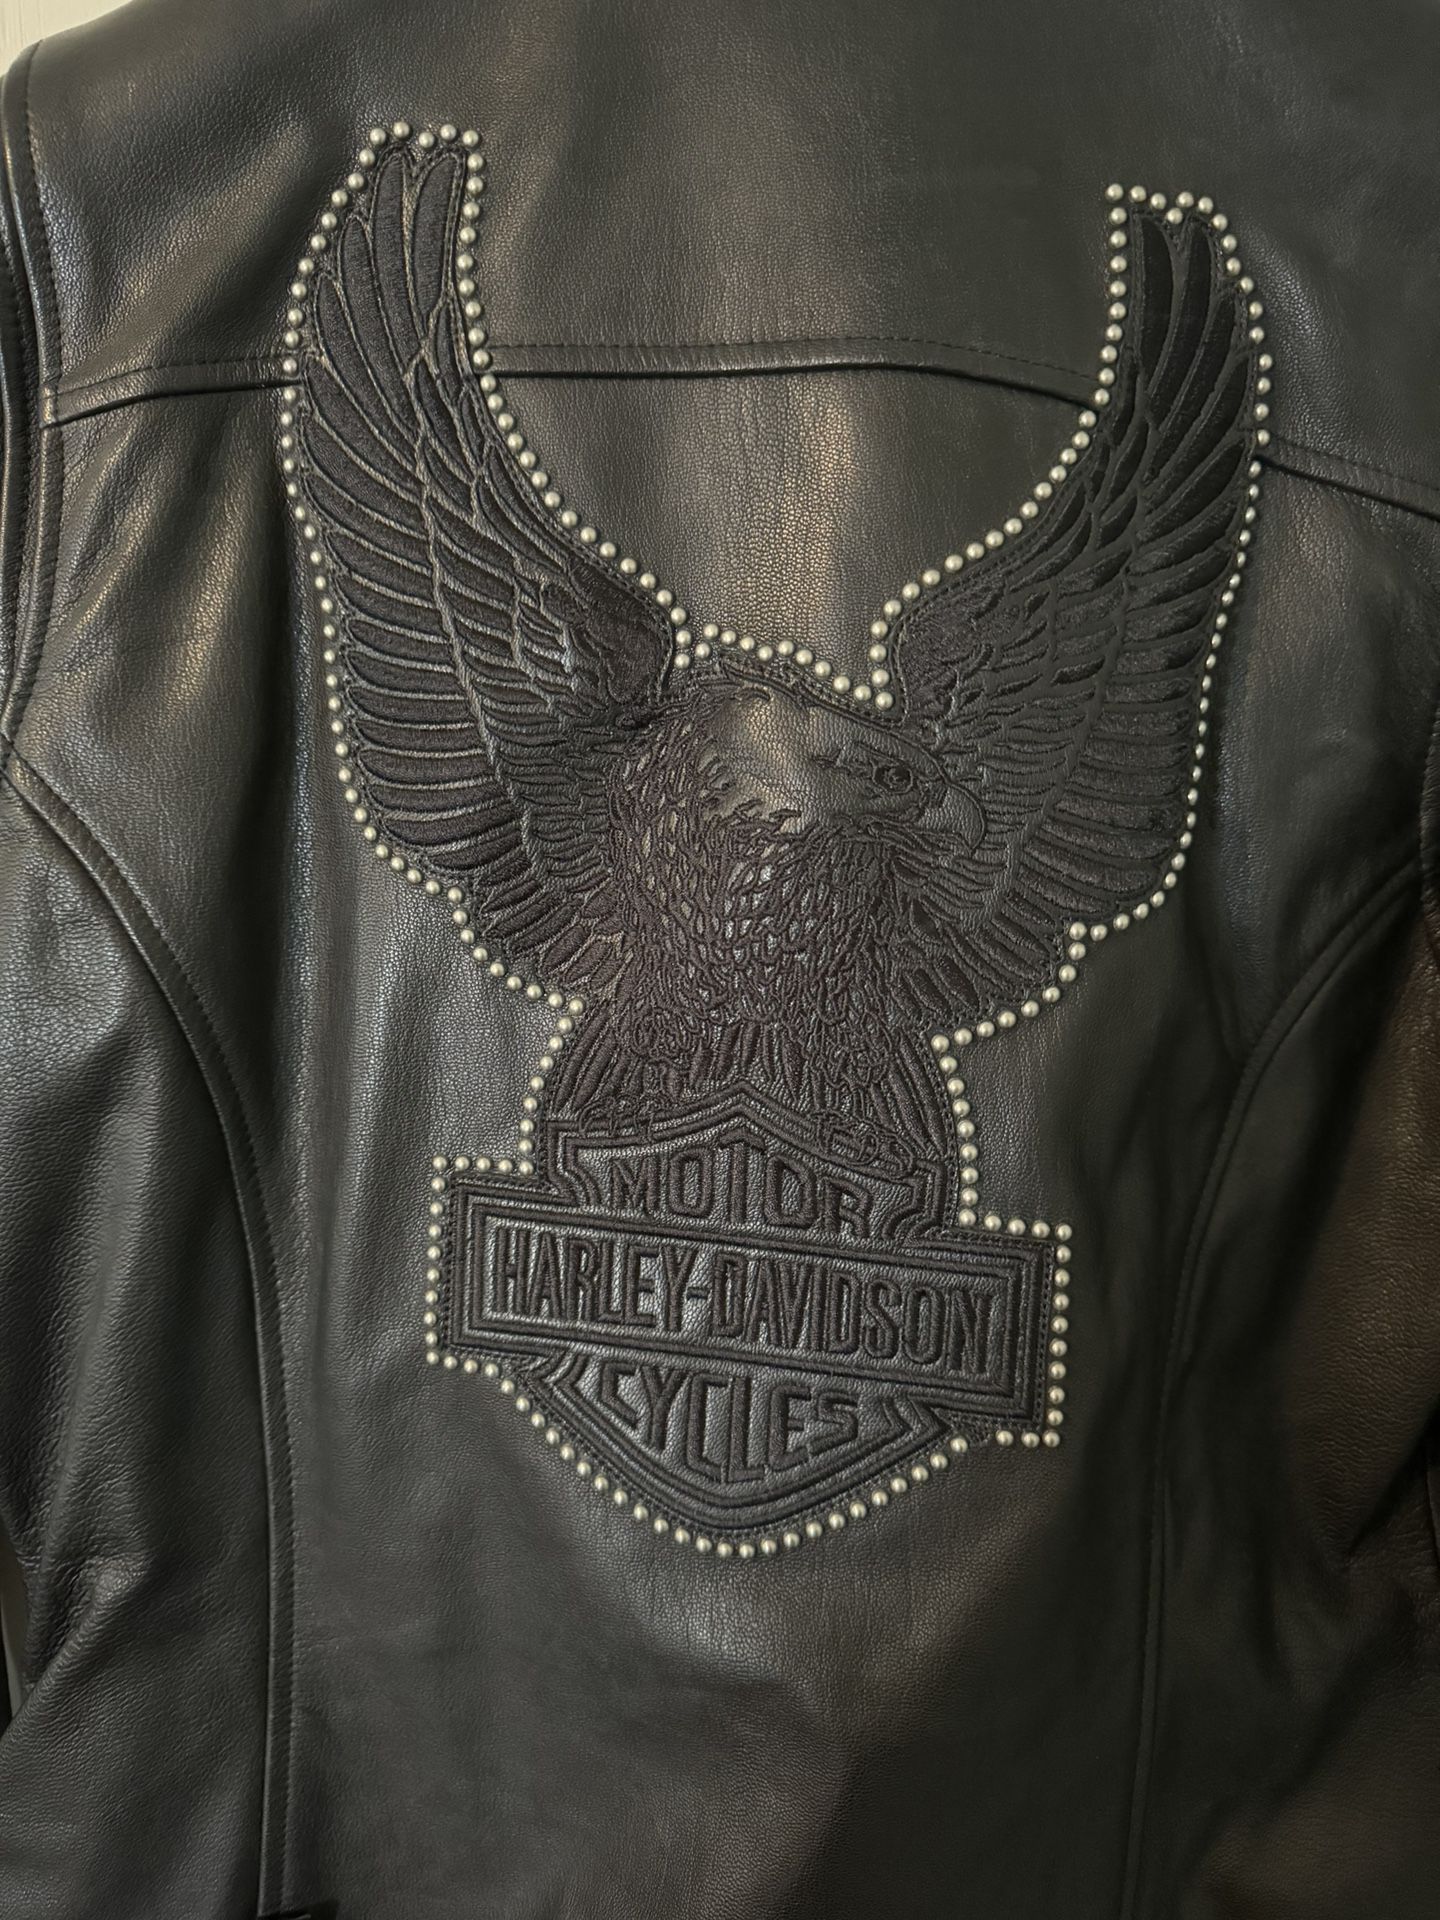 New Women’s Large Harley Davidson Leather Jacket 